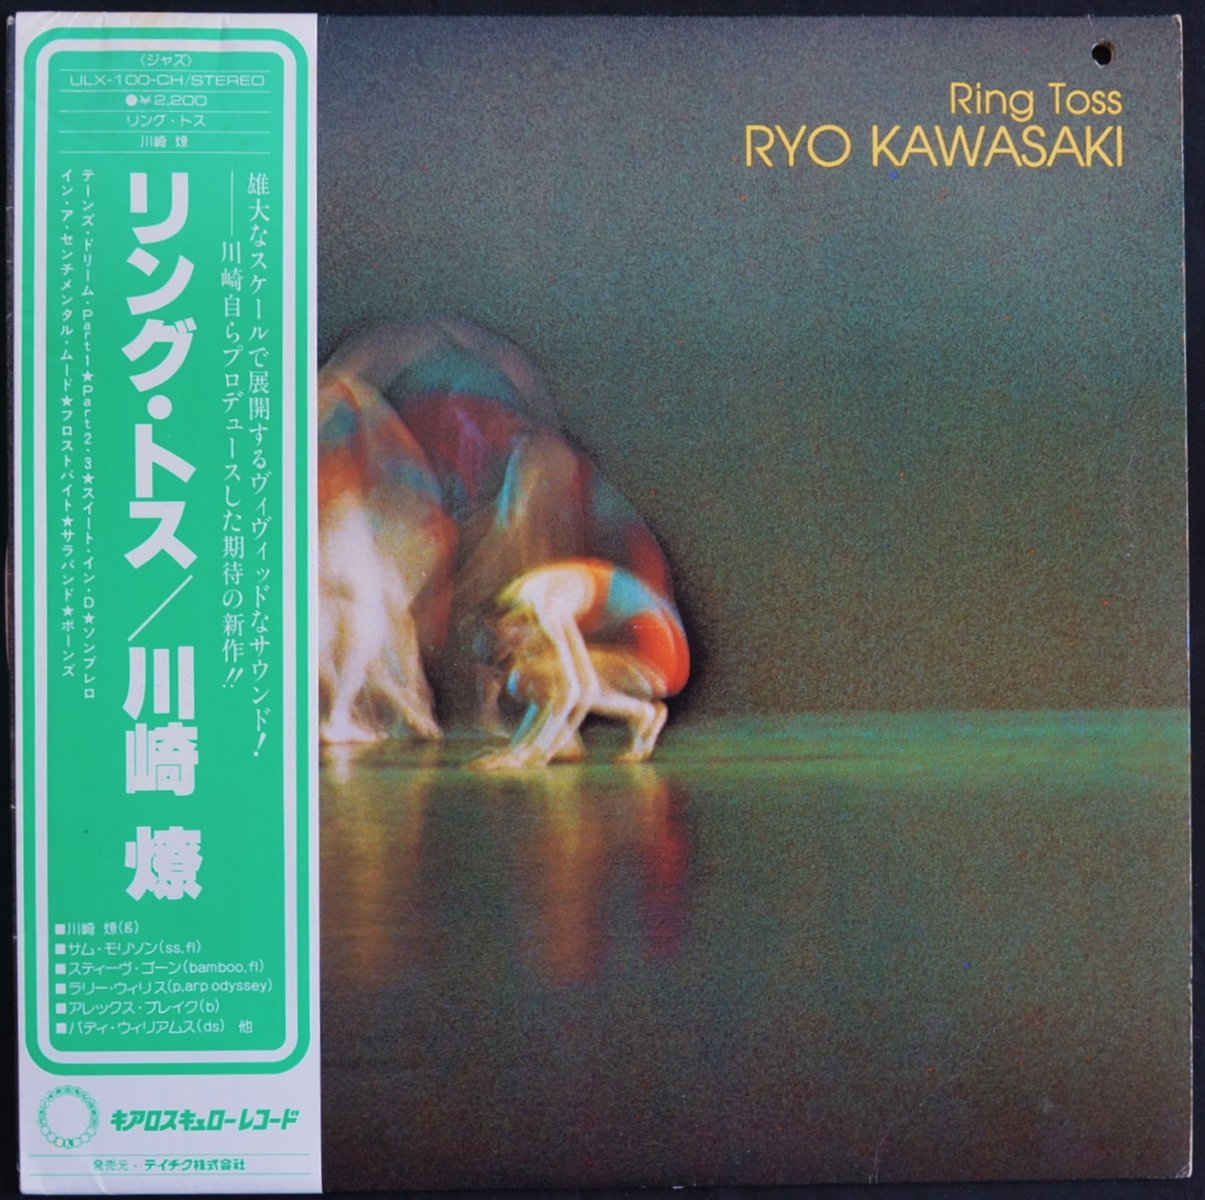 川崎燎 RYO KAWASAKI / リング・トス RING TOSS (LP)